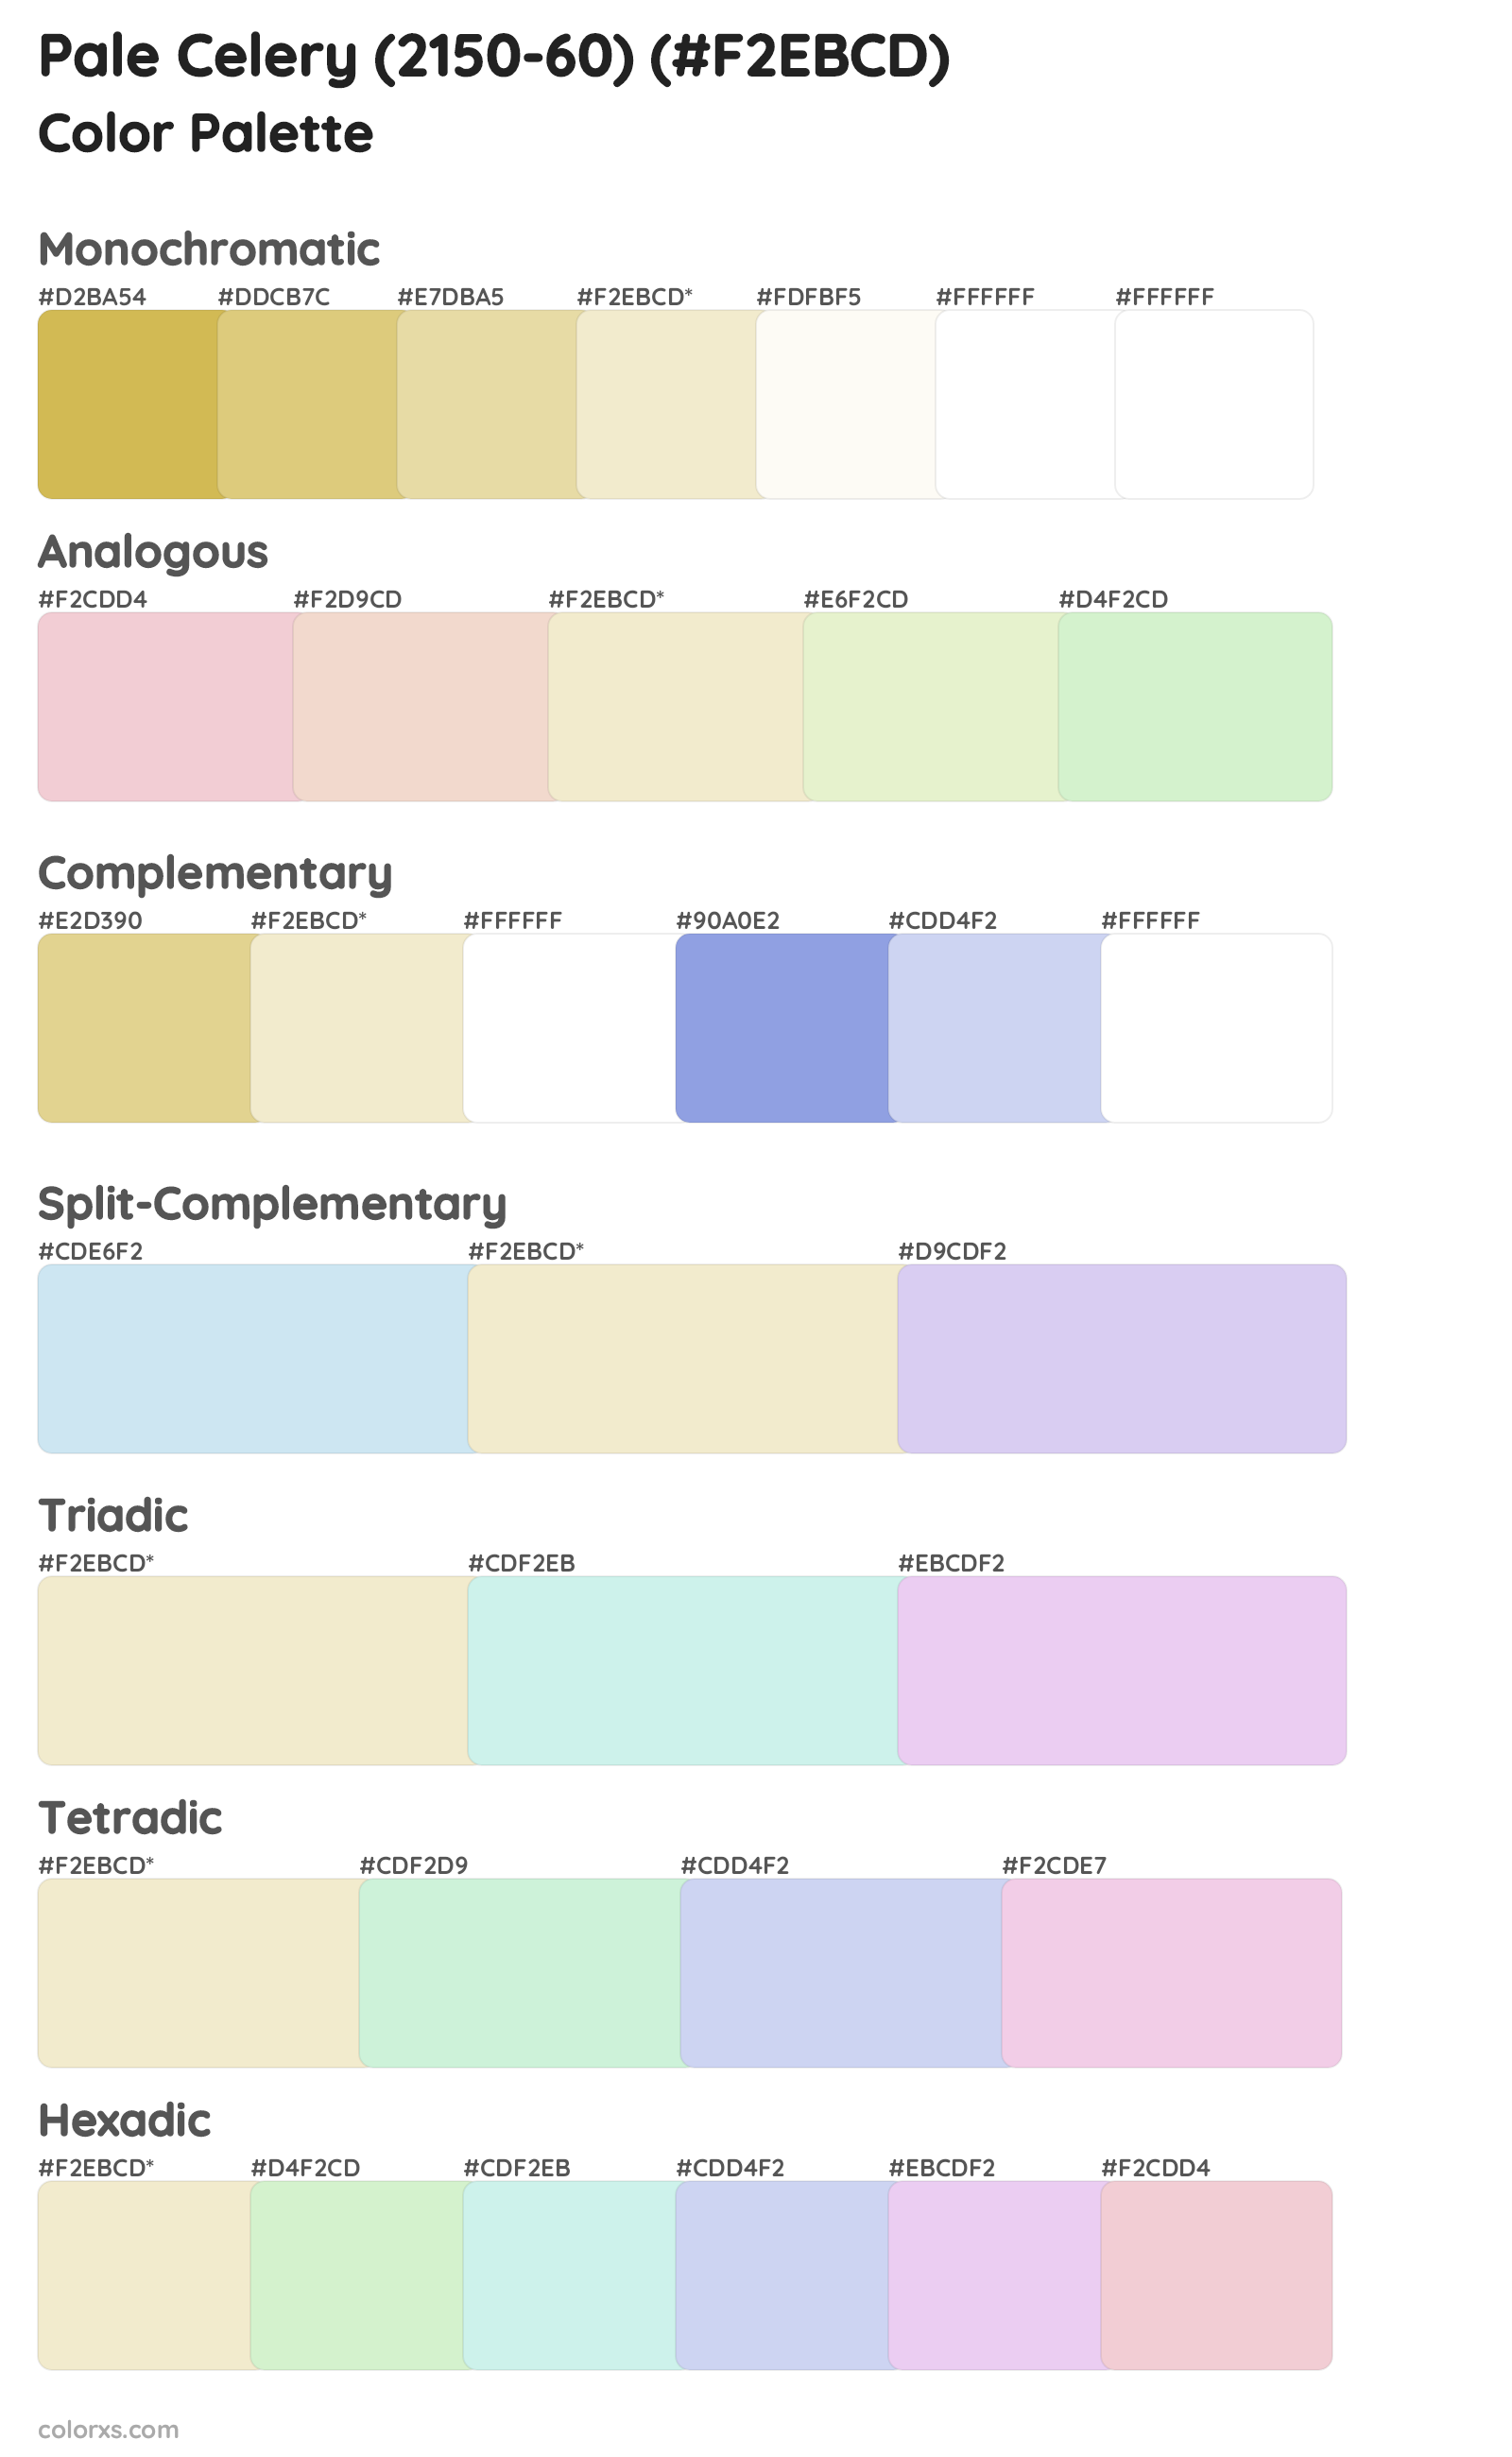 Pale Celery (2150-60) Color Scheme Palettes